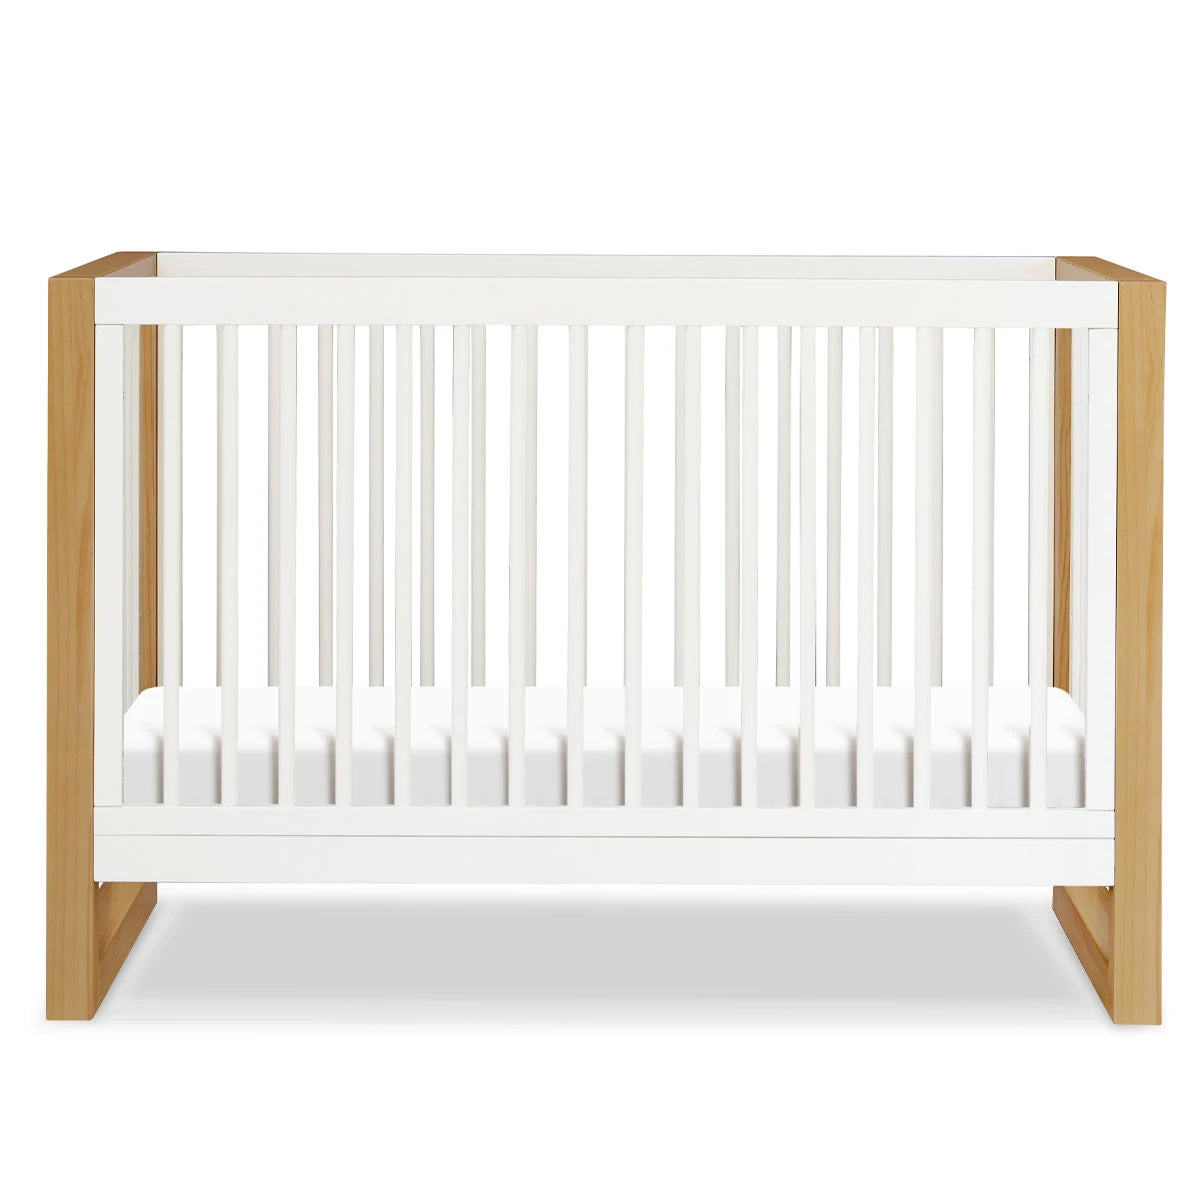 Warm White / Honey - Namesake Nantucket 3-in-1 Convertible Crib with Toddler Bed Conversion Kit